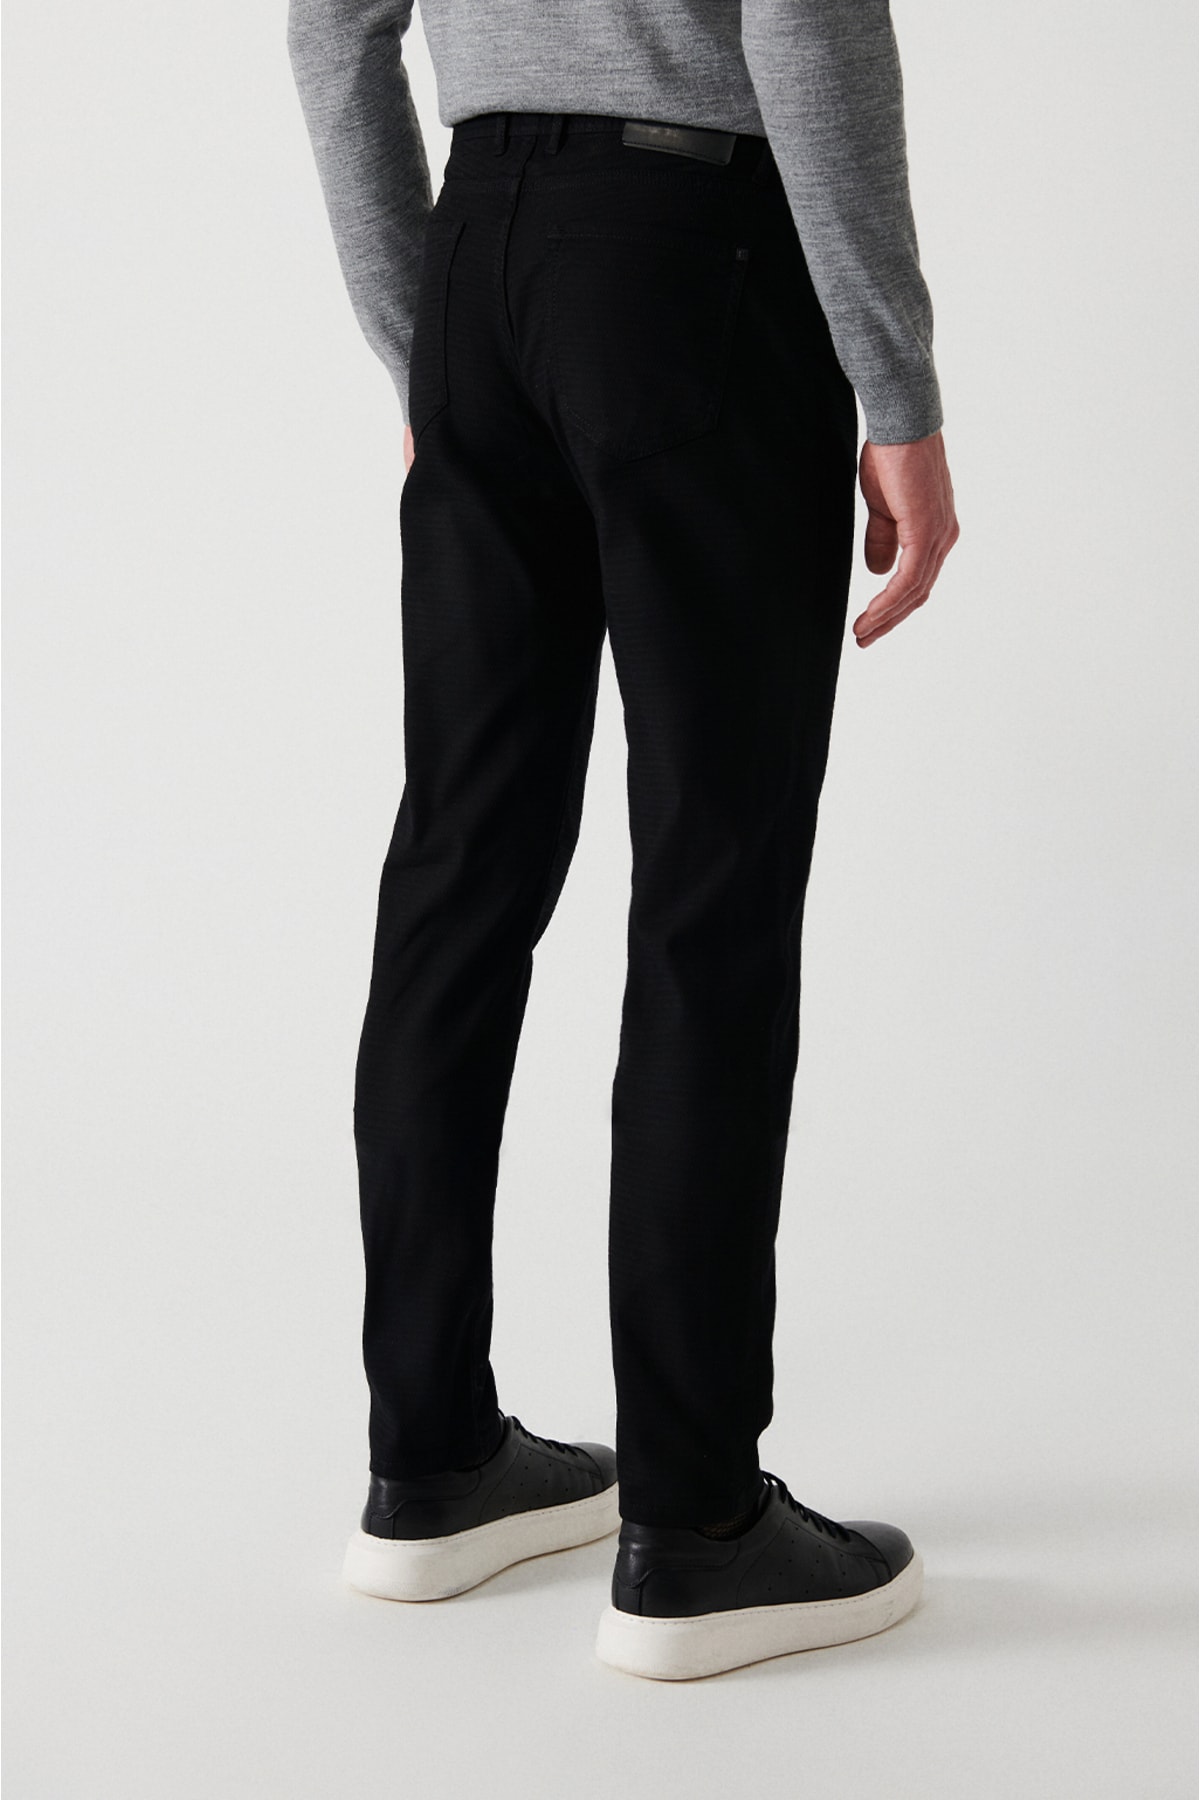 شلوار جین جیب دار زیپ دار مدل راسته مردانه آوا Avva (برند ترکیه)